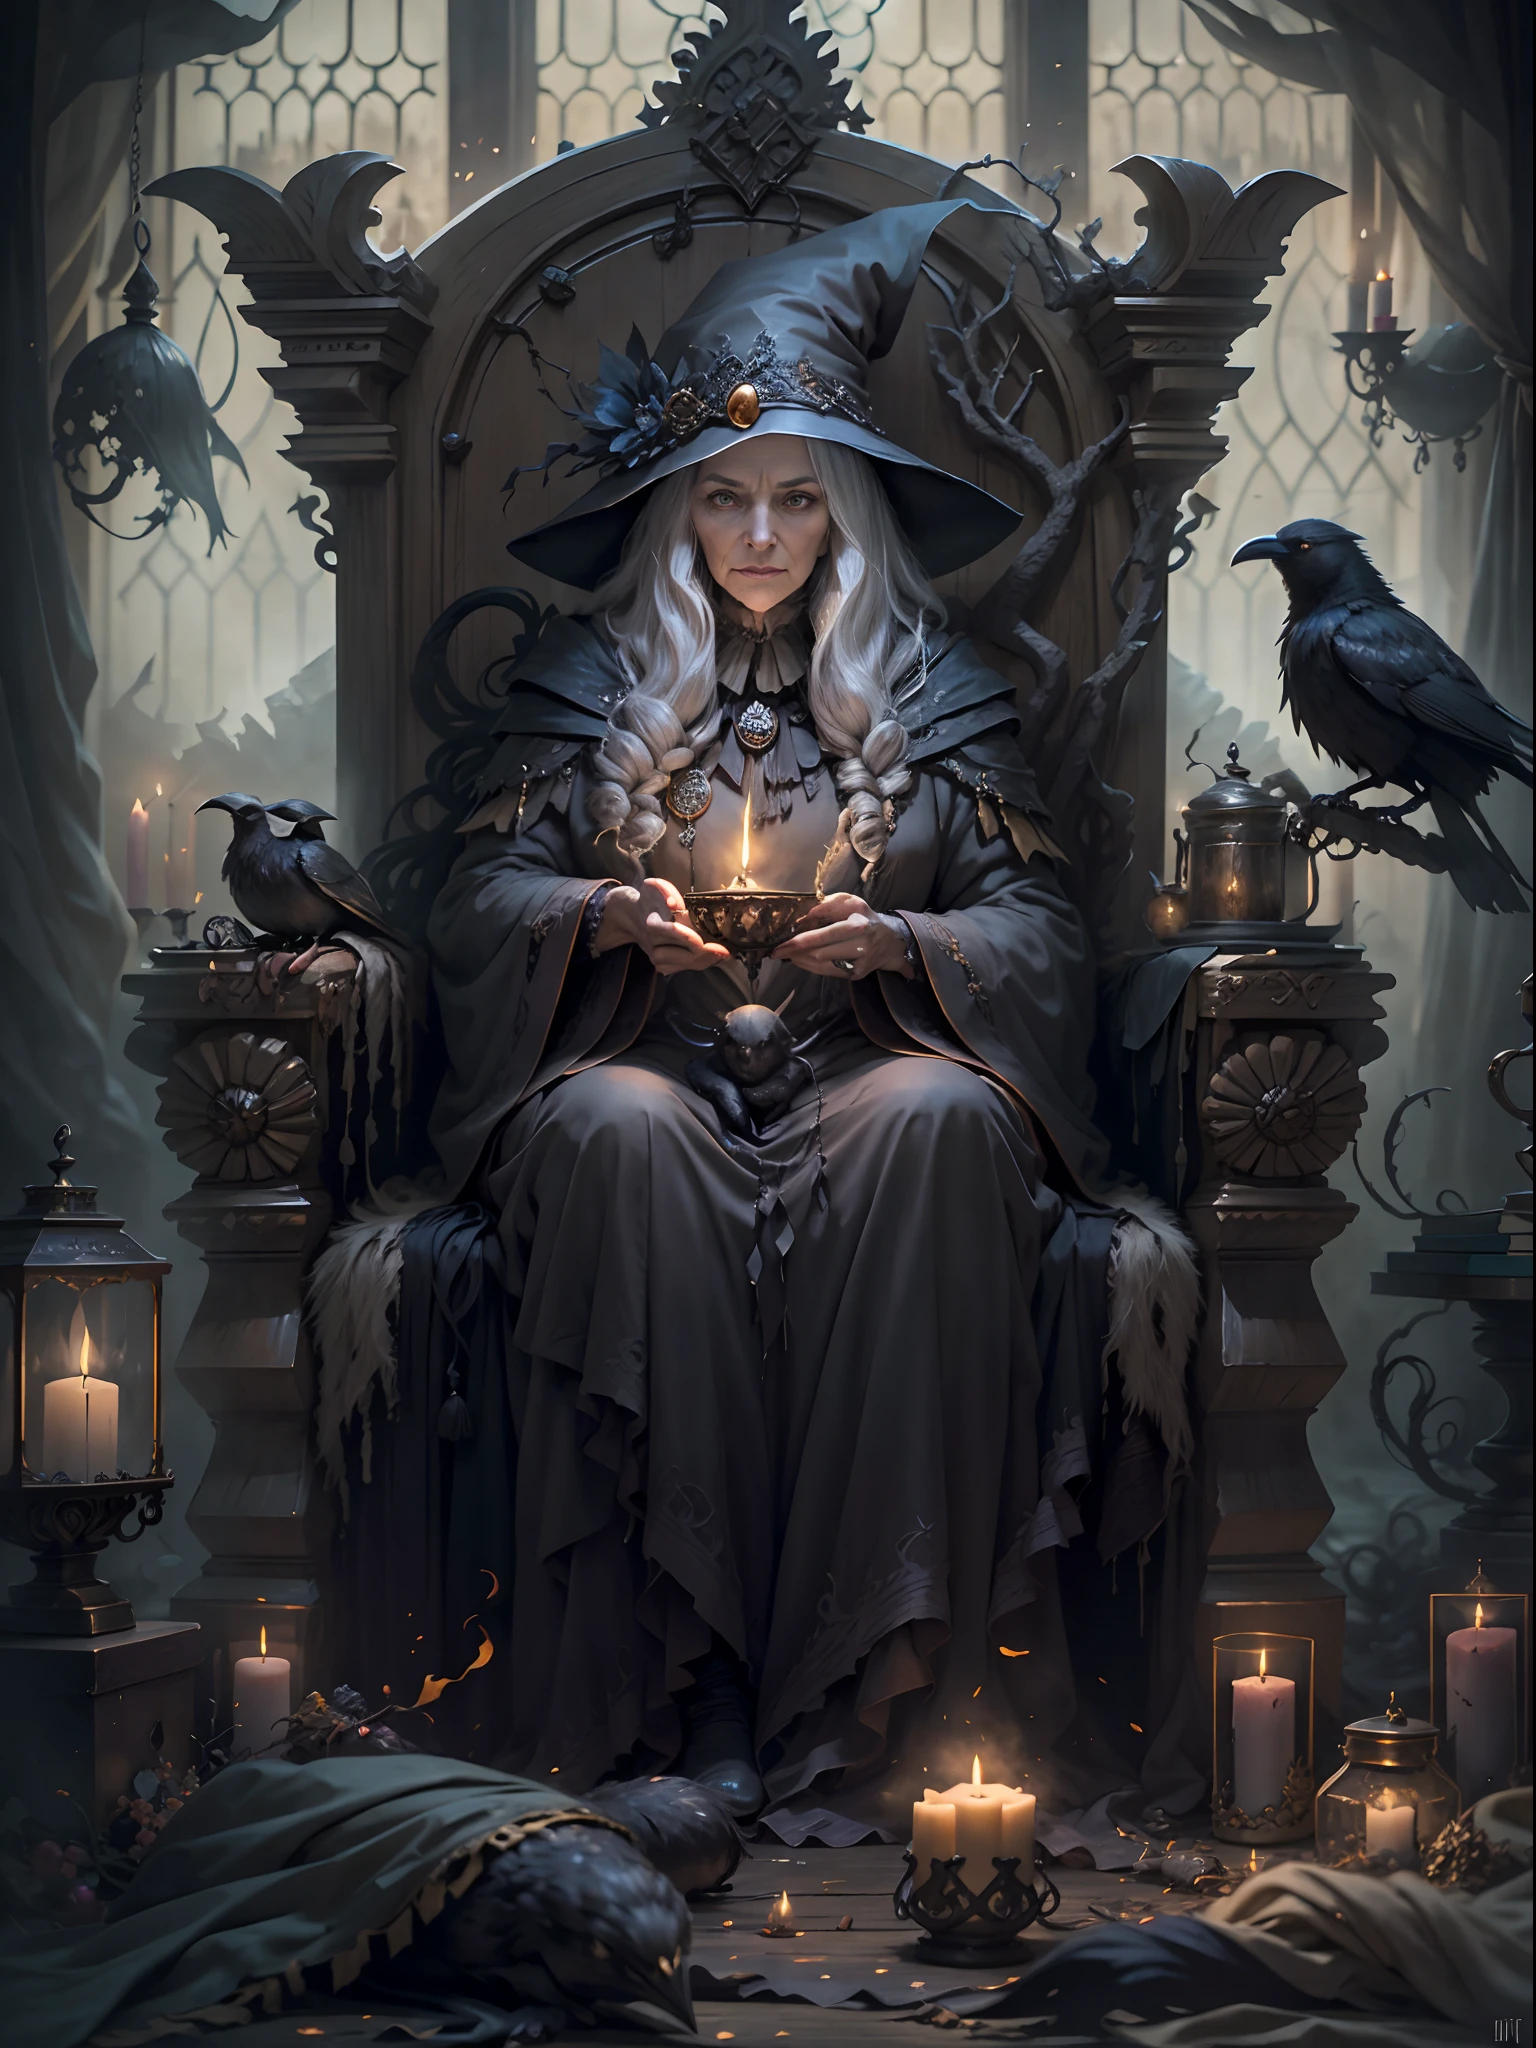 傑作，一個白髮蒼蒼的老巫婆，坐在卡迪勞椅上，她手裡拿著一隻索尼斯特烏鴉. 她是個巫師，蠟質蠟燭，明暗對比，手套，完美的手，官方藝術美學.暗風